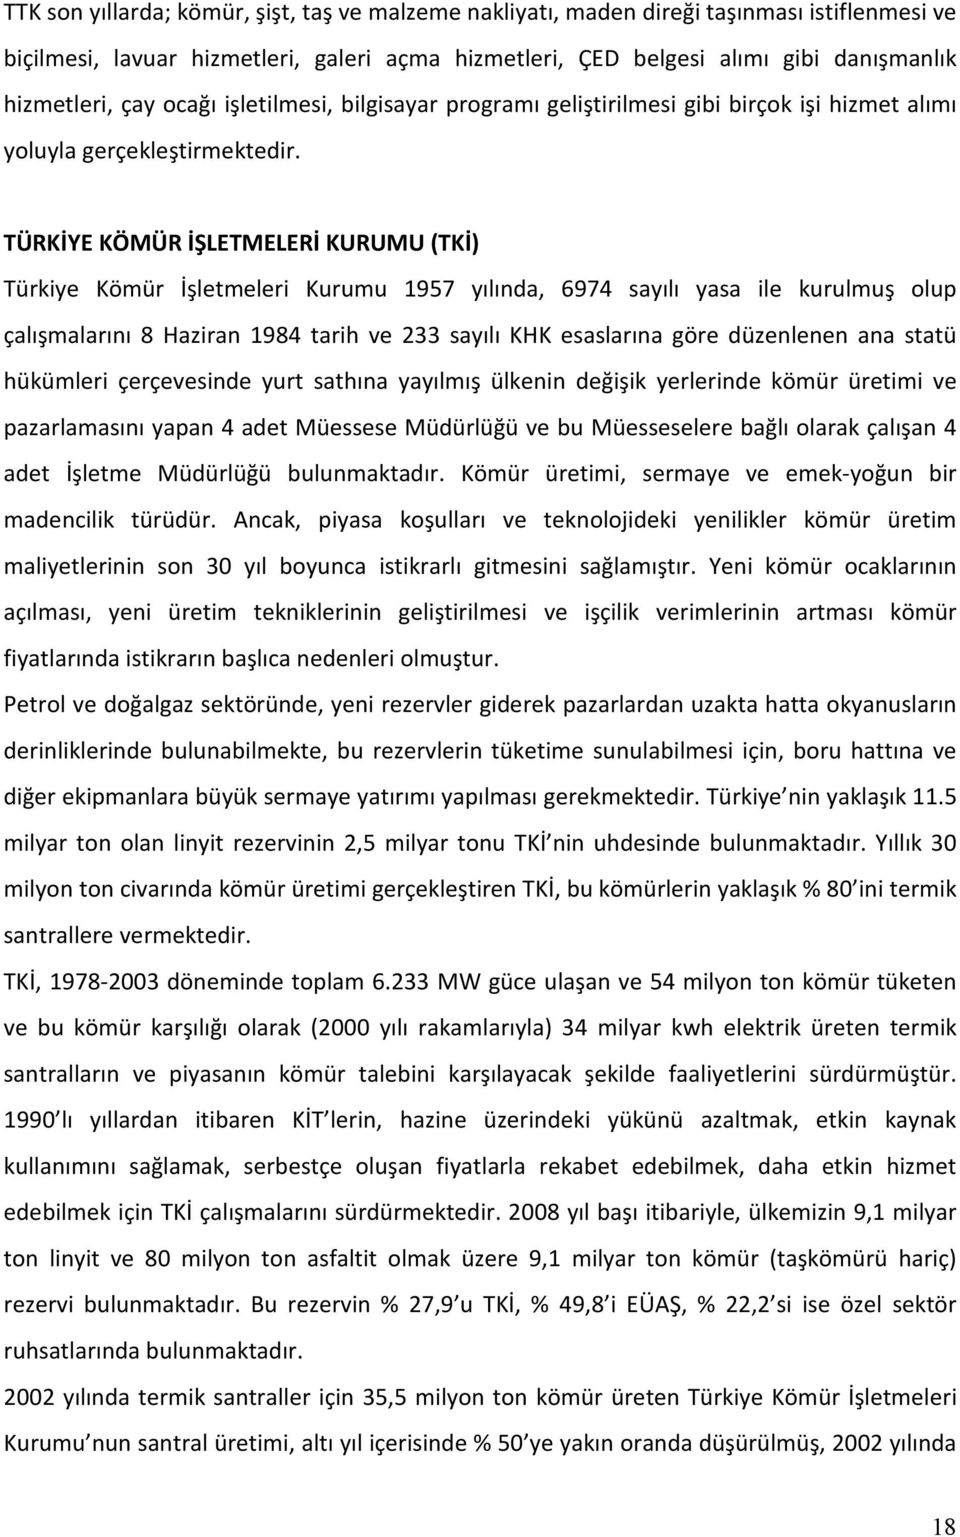 TÜRKİYE KÖMÜR İŞLETMELERİ KURUMU (TKİ) Türkiye Kömür İşletmeleri Kurumu 1957 yılında, 6974 sayılı yasa ile kurulmuş olup çalışmalarını 8 Haziran 1984 tarih ve 233 sayılı KHK esaslarına göre